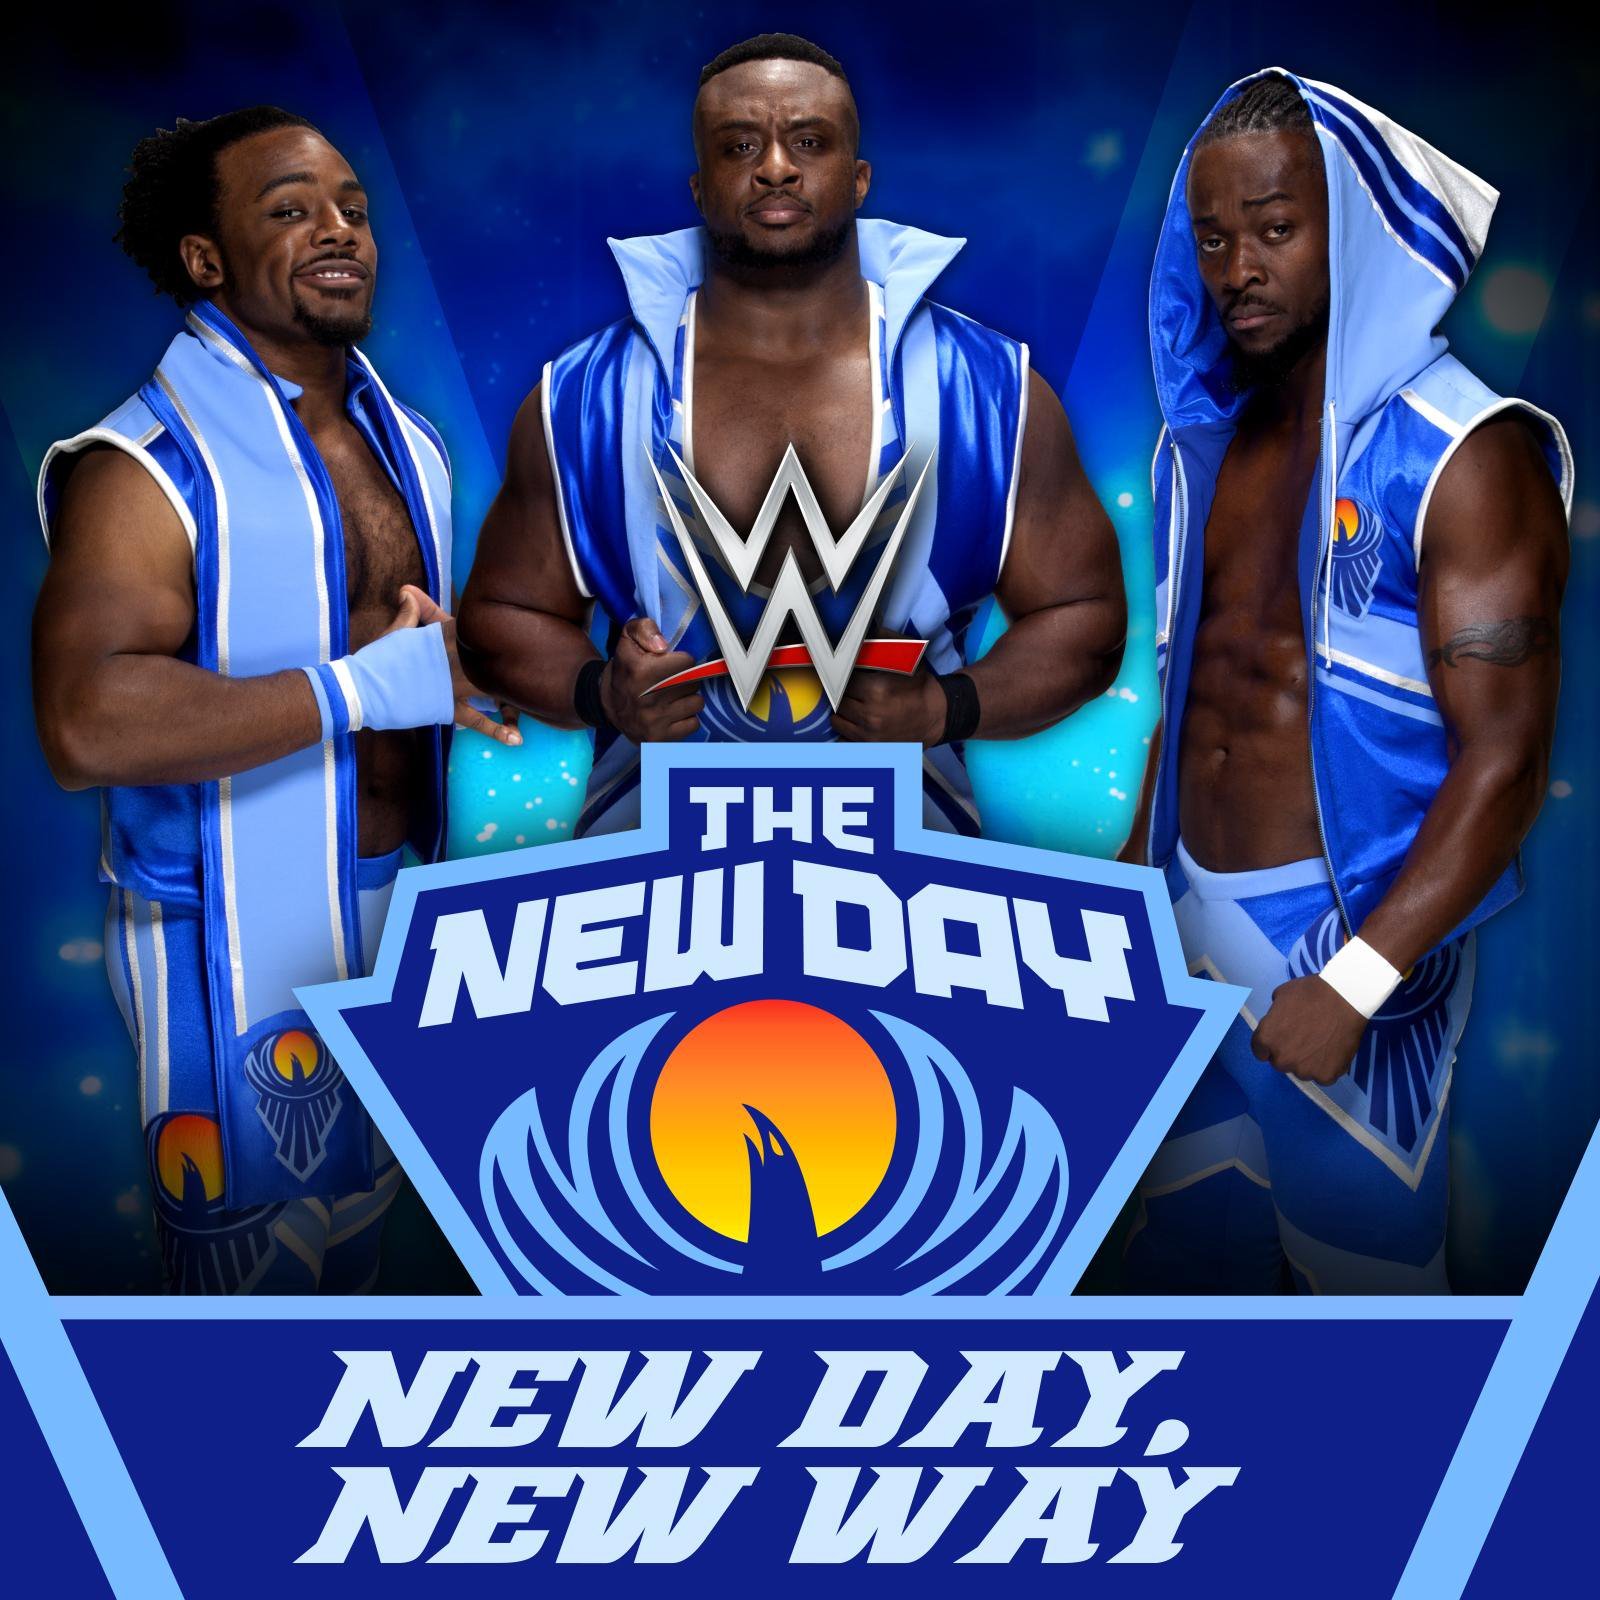 Old new day. New Day WWE. New Day New. New Day картинки. Days of the New Days of the New.